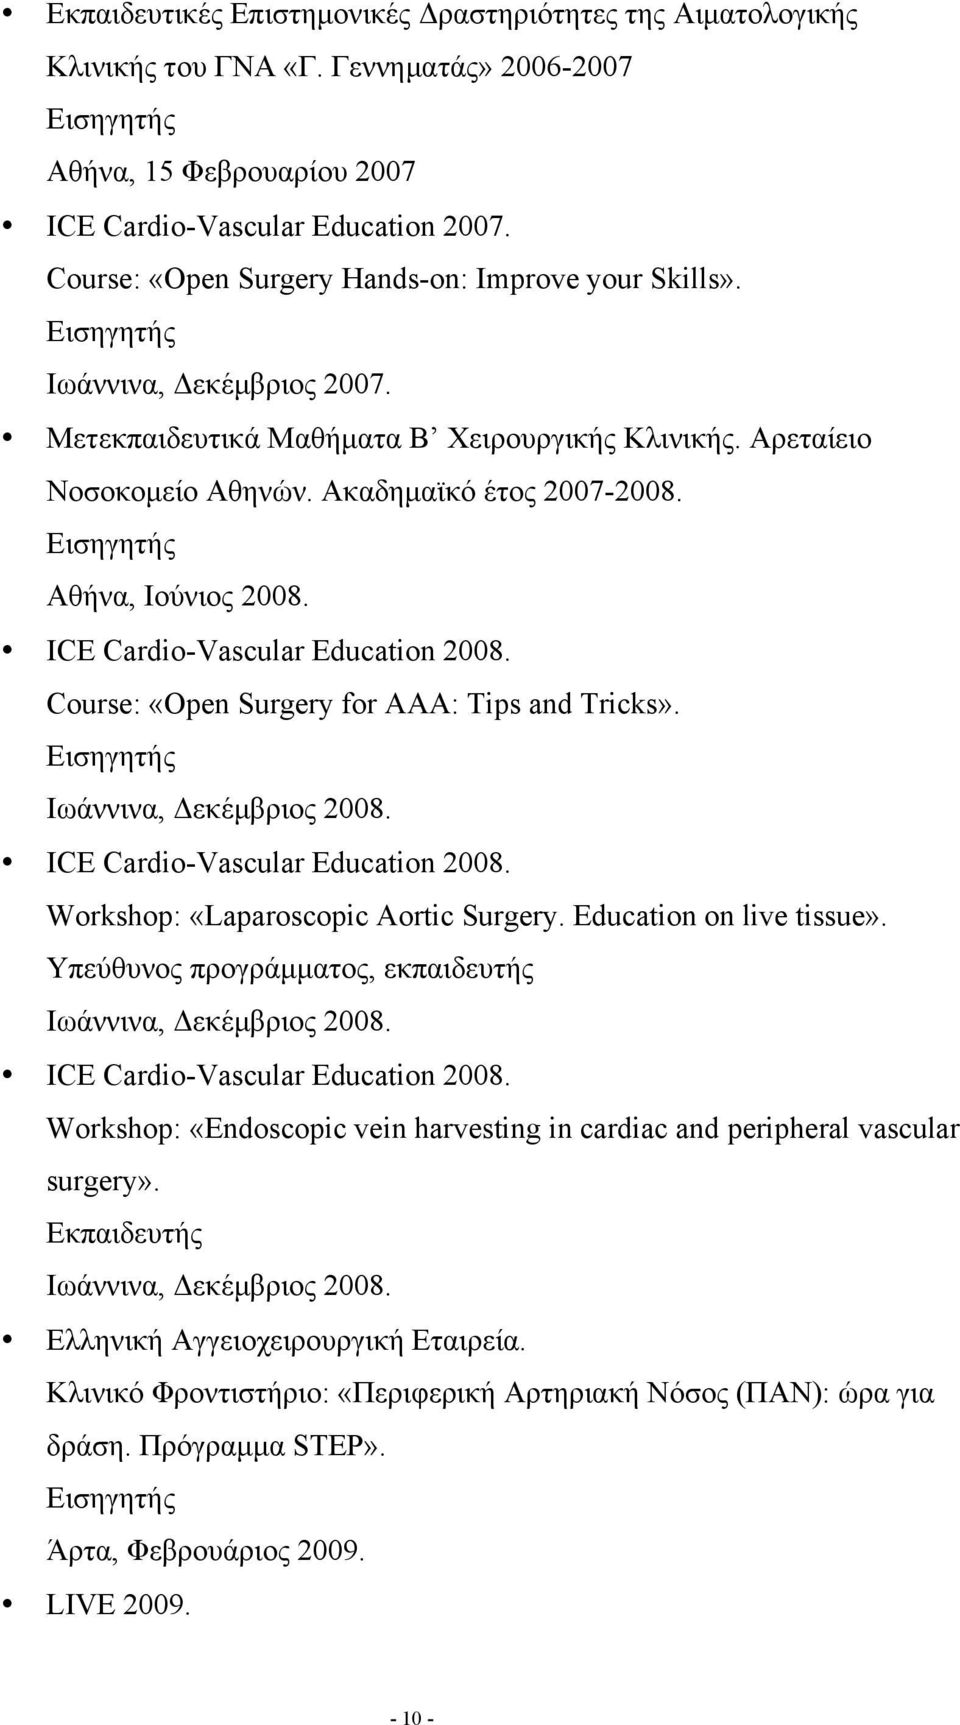 Εισηγητής Αθήνα, Ιούνιος 2008. ICE Cardio-Vascular Education 2008. Course: «Open Surgery for AAA: Tips and Tricks». Εισηγητής Ιωάννινα, Δεκέµβριος 2008. ICE Cardio-Vascular Education 2008. Workshop: «Laparoscopic Aortic Surgery.